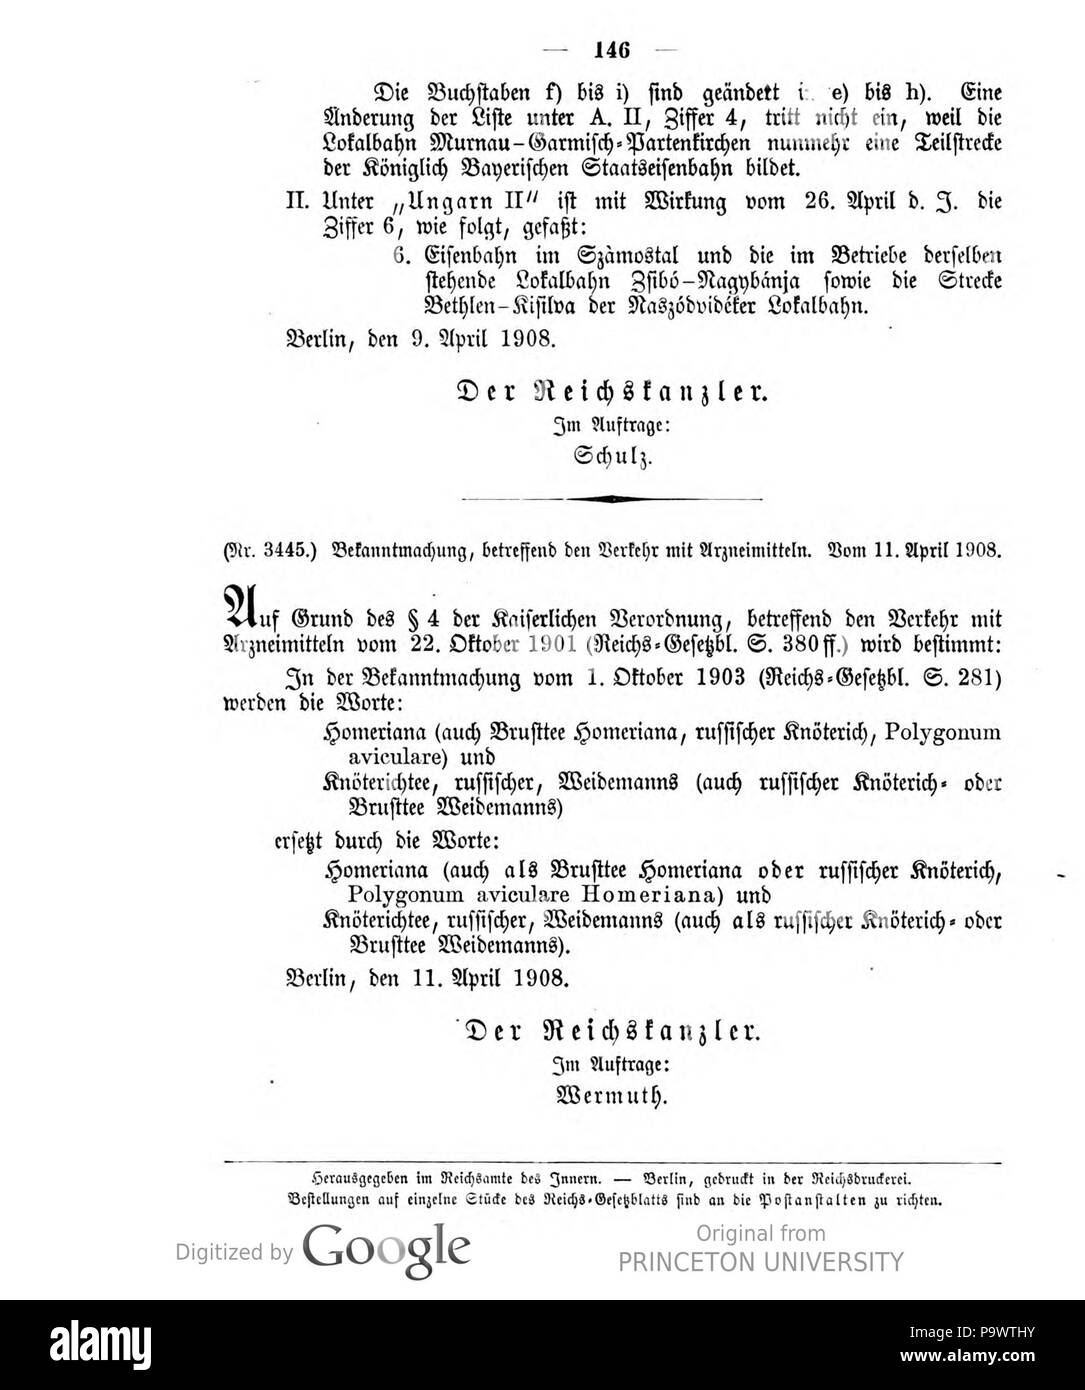 427 Deutsches Reichsgesetzblatt 1908 016 146 Stock Photo